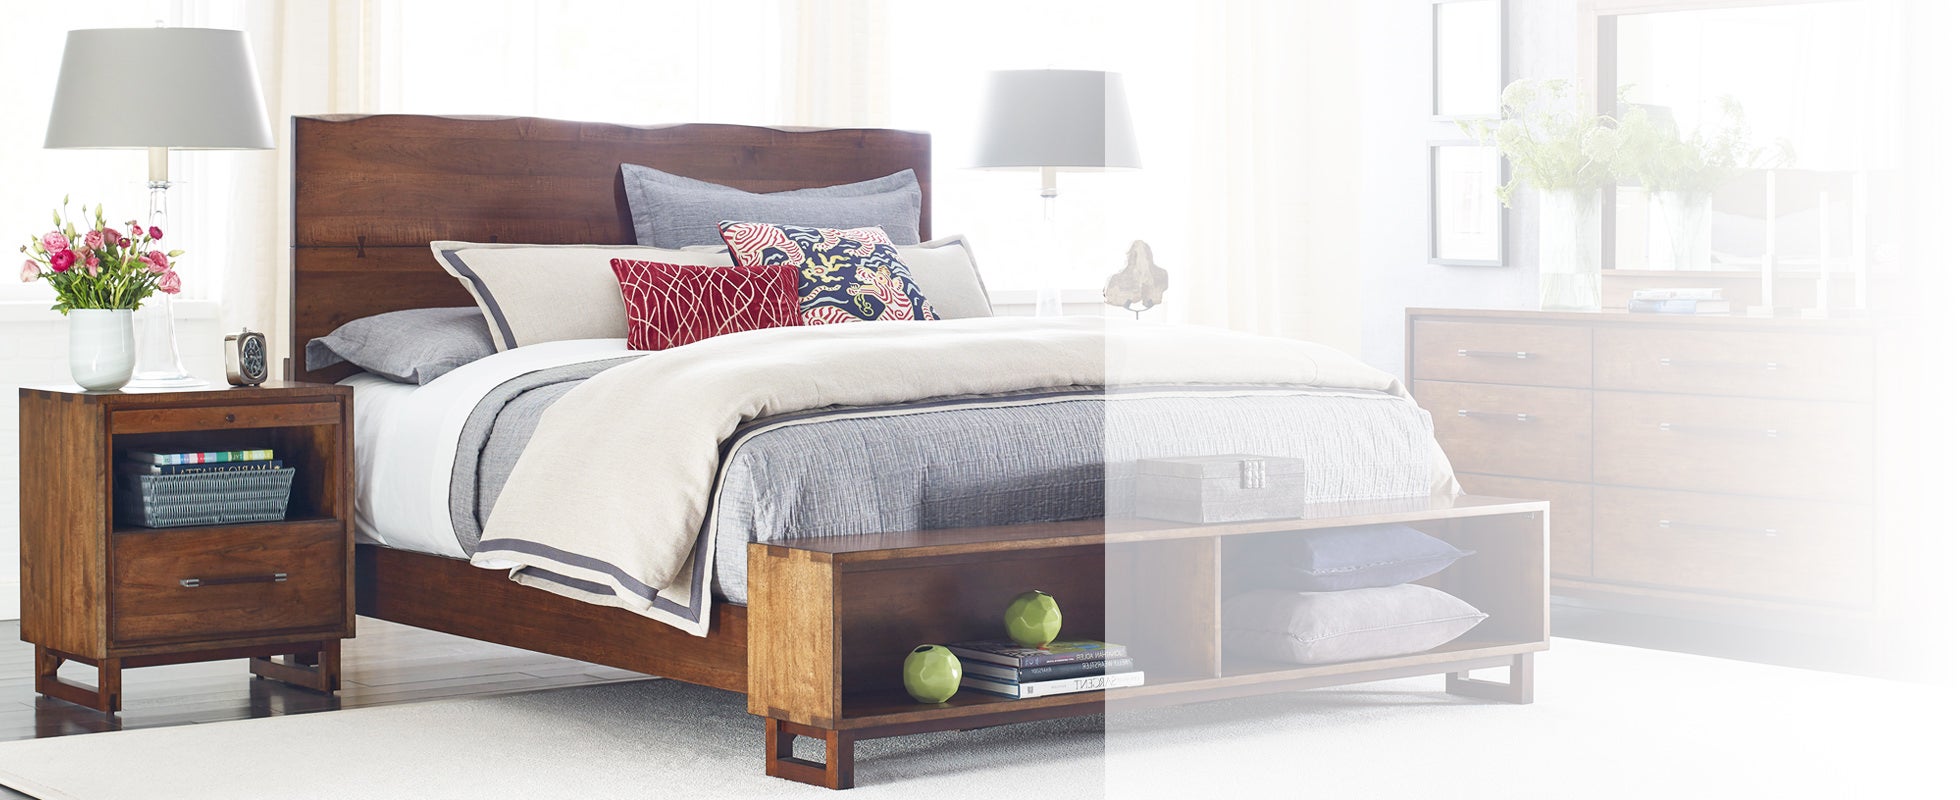 Bedroom Furniture Design Image